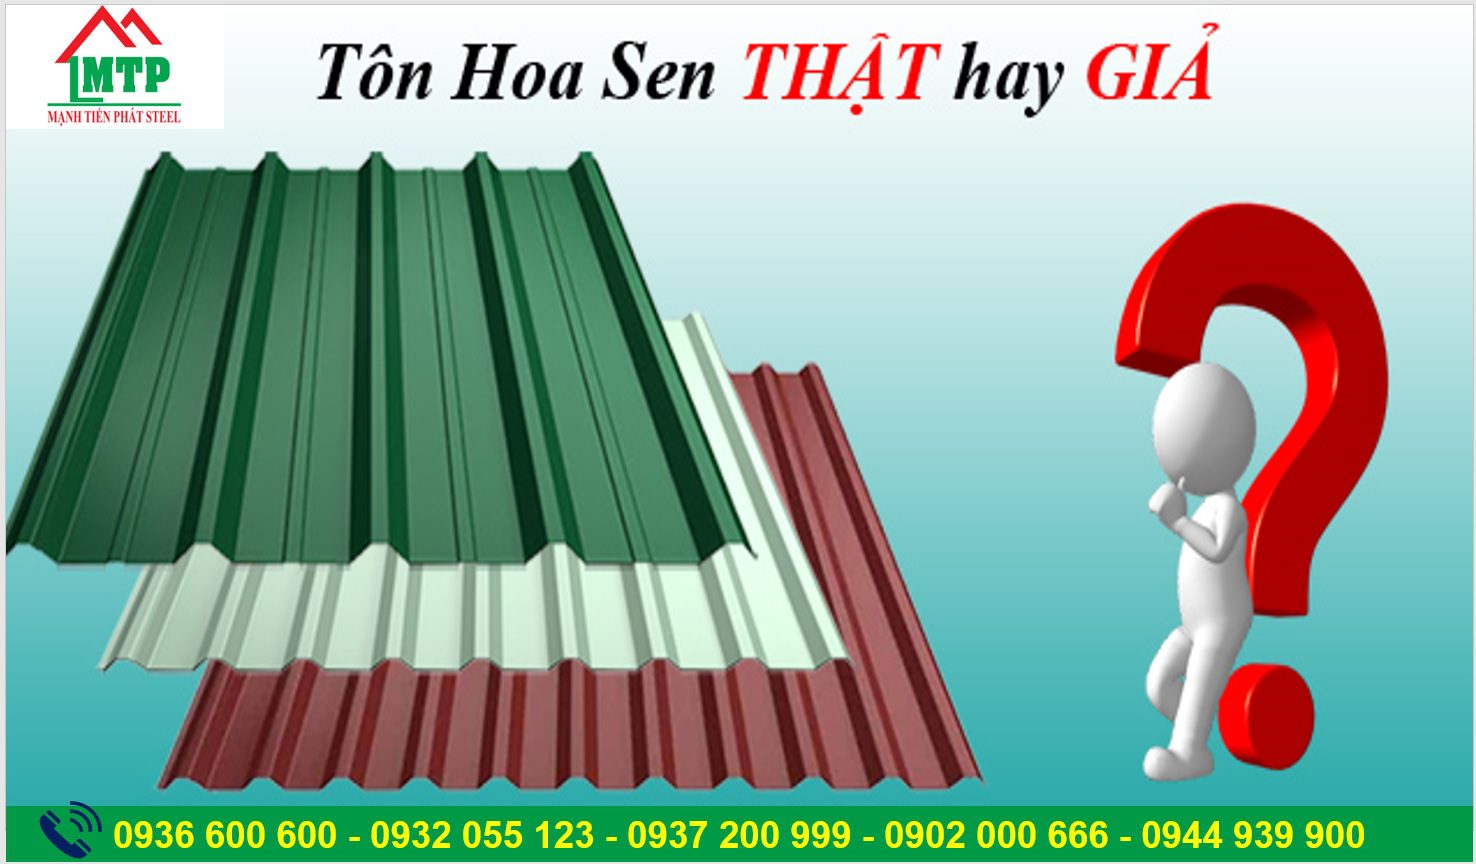 Phan Biet Ton Hoa Sen That Gia 1